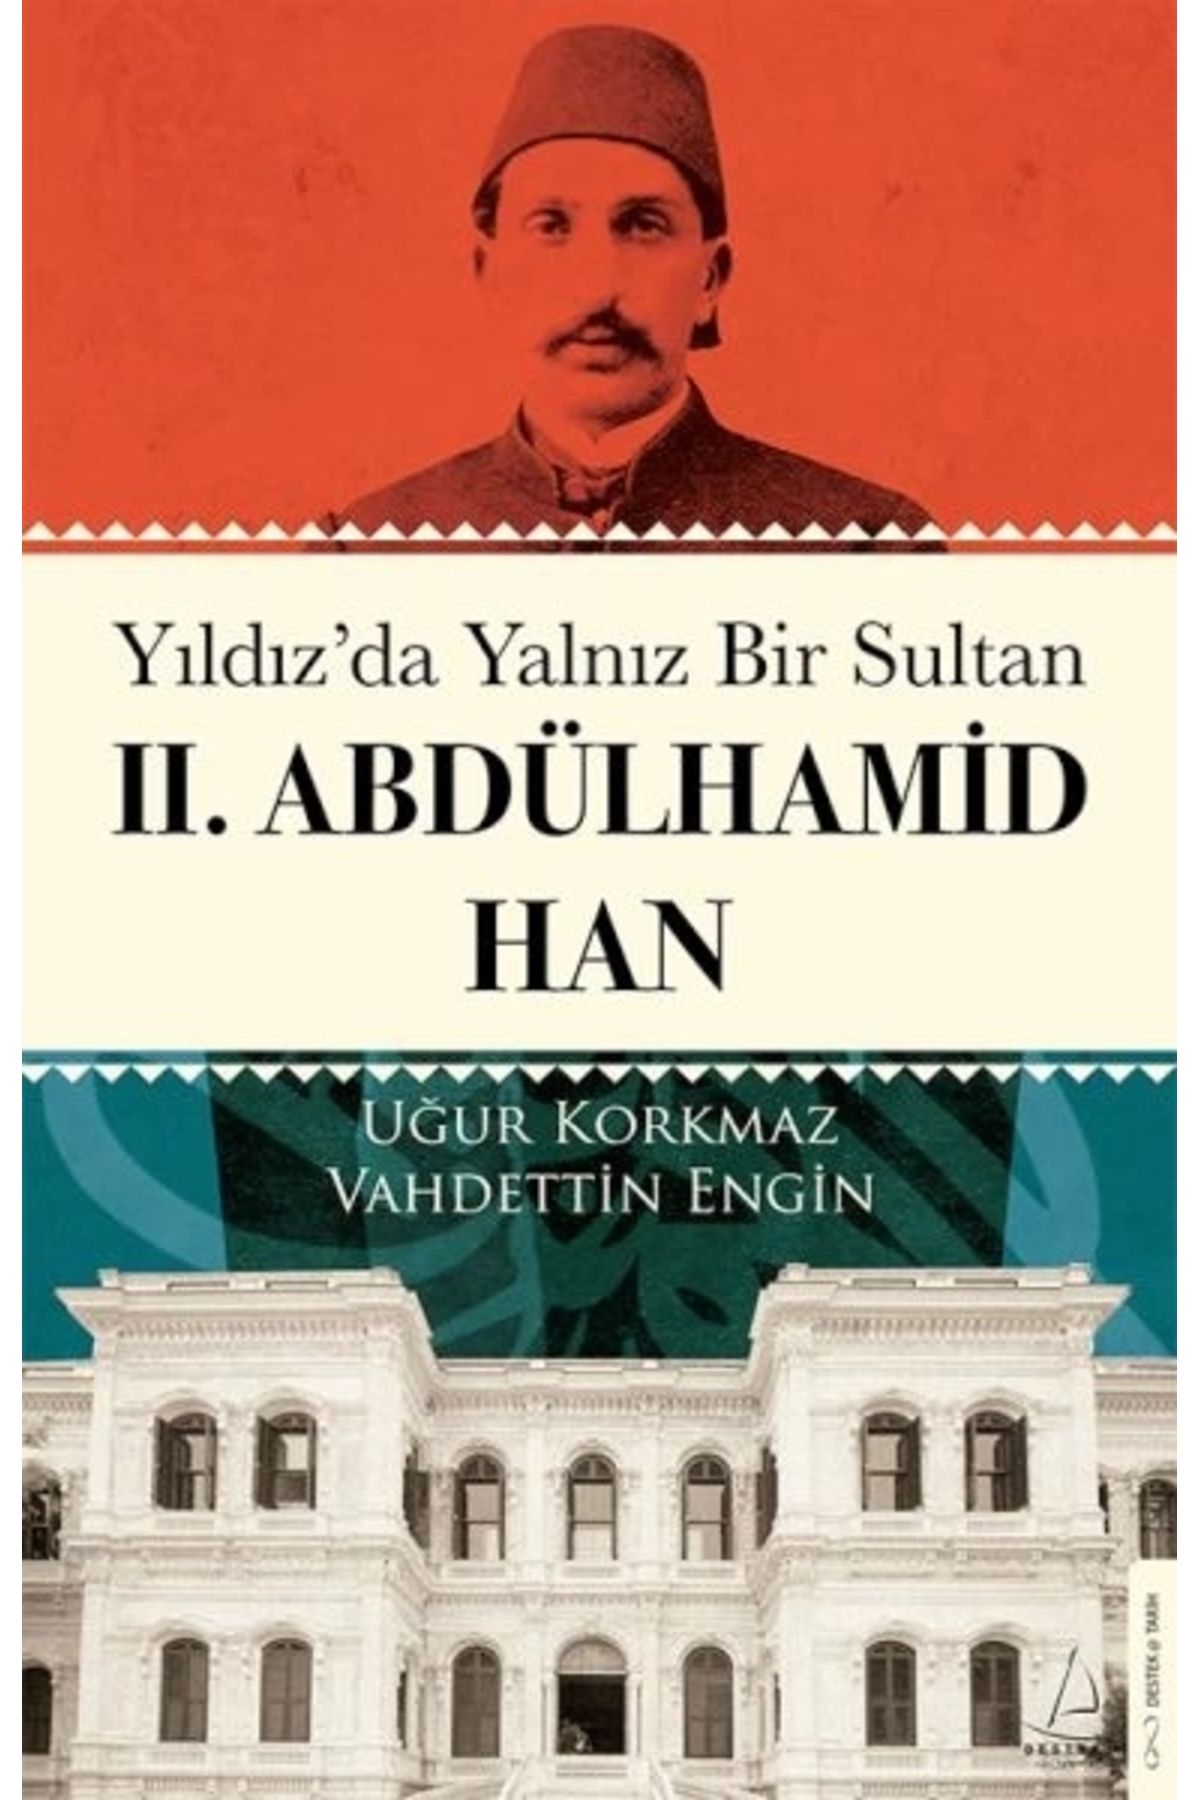 Destek Yayınları Yıldız’da Yalnız Bir Sultan Iı. Abdülhamid Han